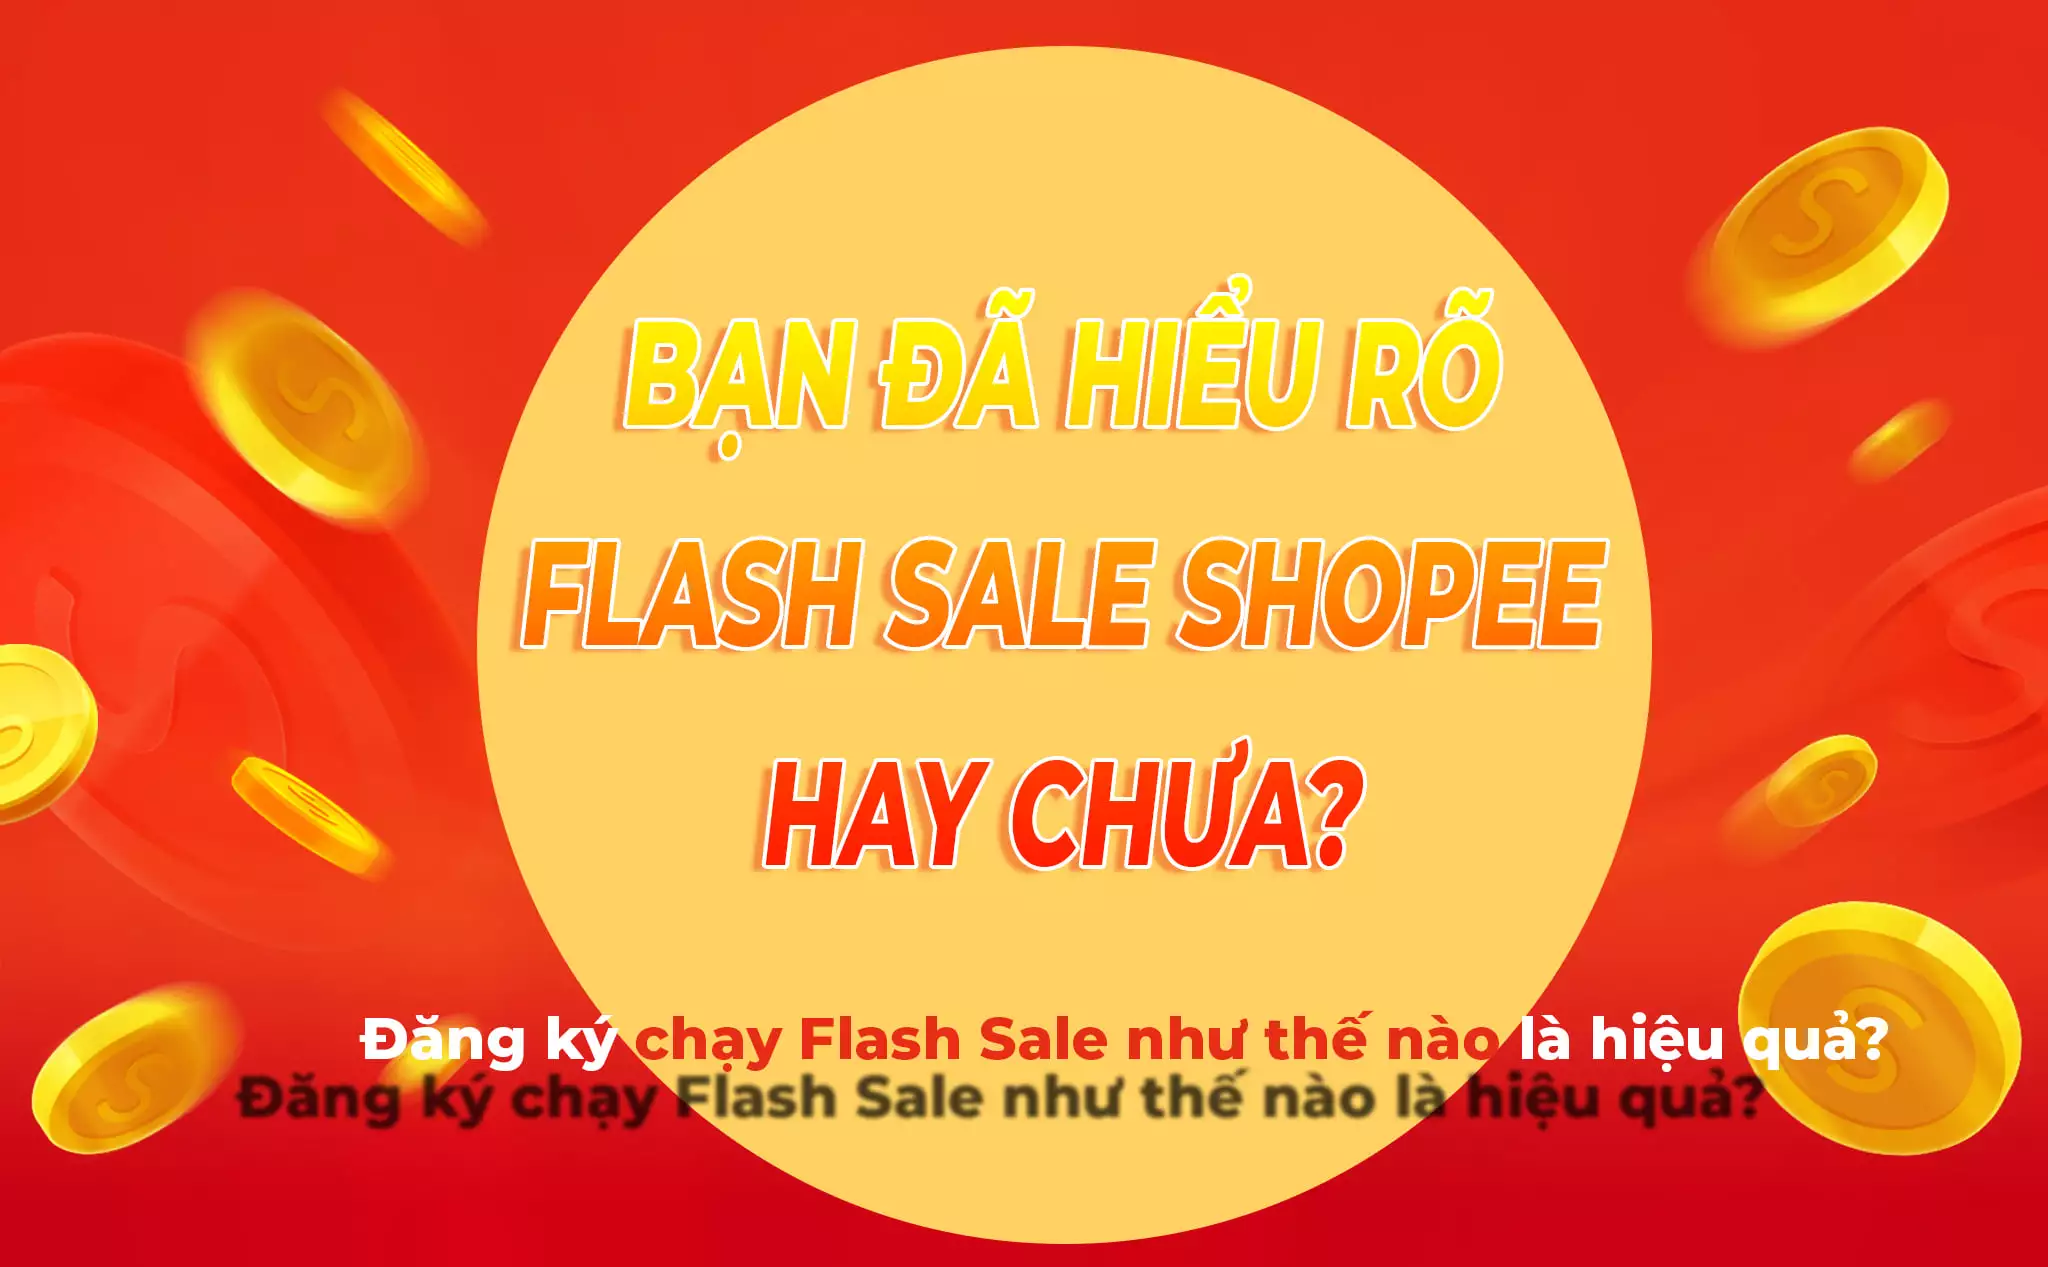 Flash sale shopee là gì? Sử dụng hiệu quả kinh doanh shopee